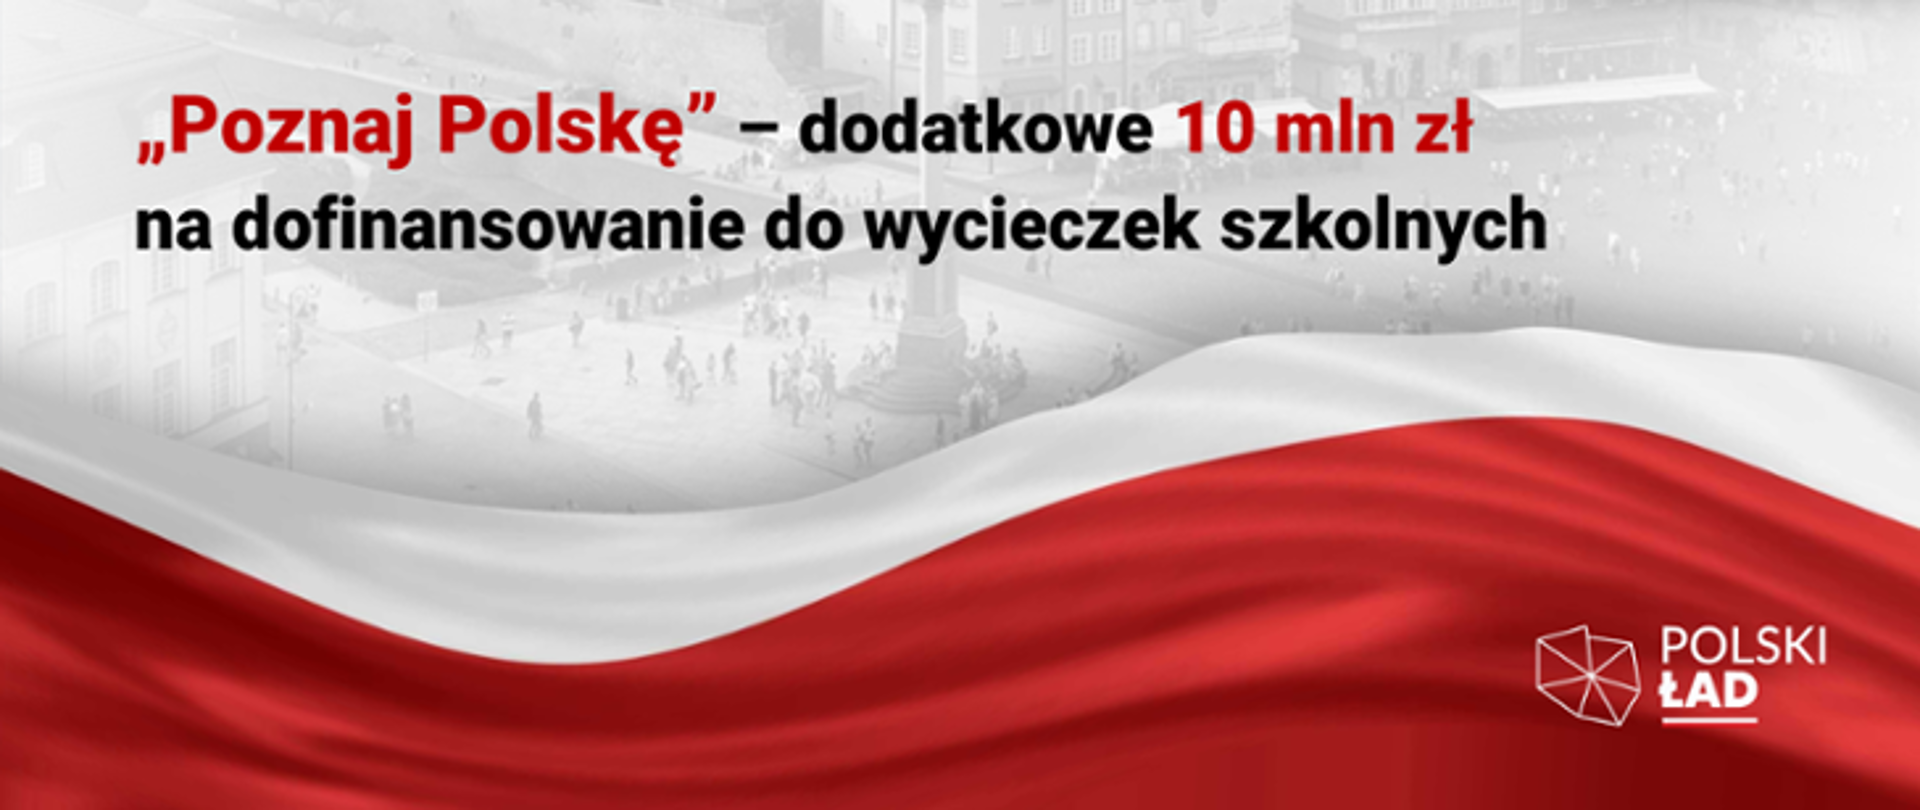 Grafika z tekstem "Poznaj Polskę - dodatkowe 10 mln zł na dofinansowanie do wycieczek szkolnych" w tle flaga Polski